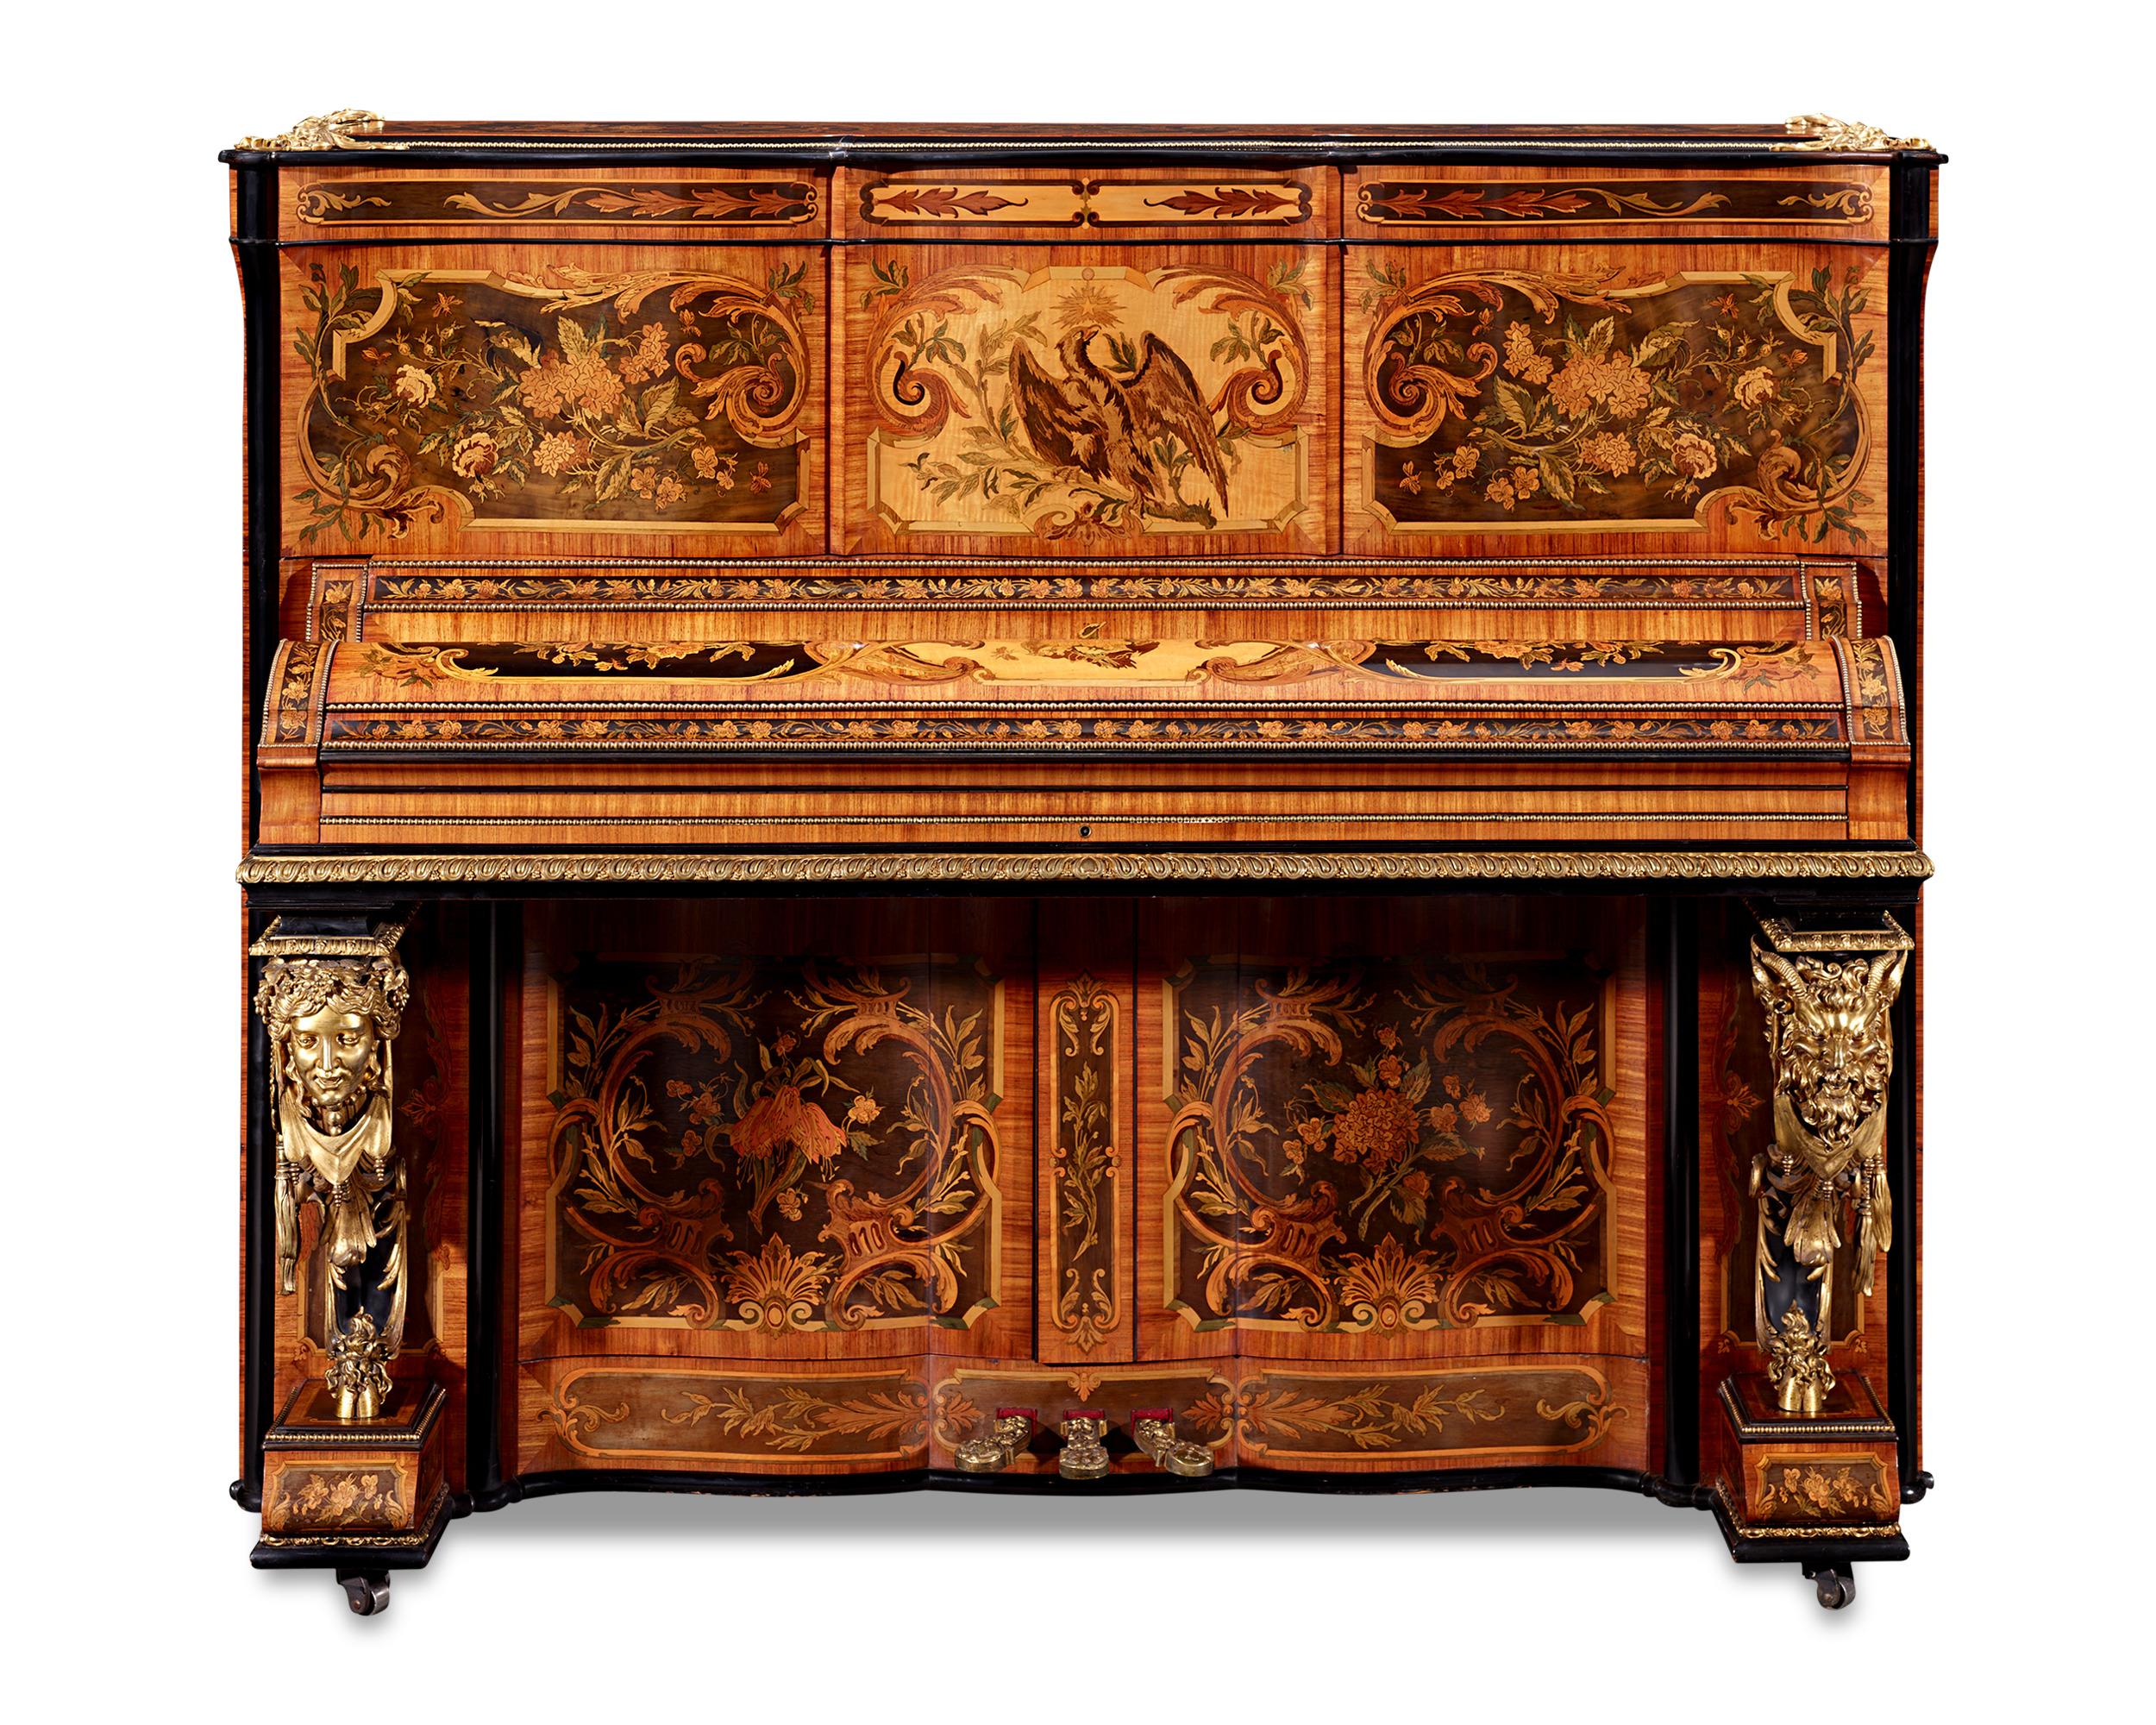 Dieses von dem berühmten französischen Kunsthandwerker und Autor Claude Montal gefertigte Klavier wurde 1851 auf der berühmten Crystal Palace-Ausstellung in London präsentiert, wo es für seine exquisite Handwerkskunst hoch ausgezeichnet wurde. Drei